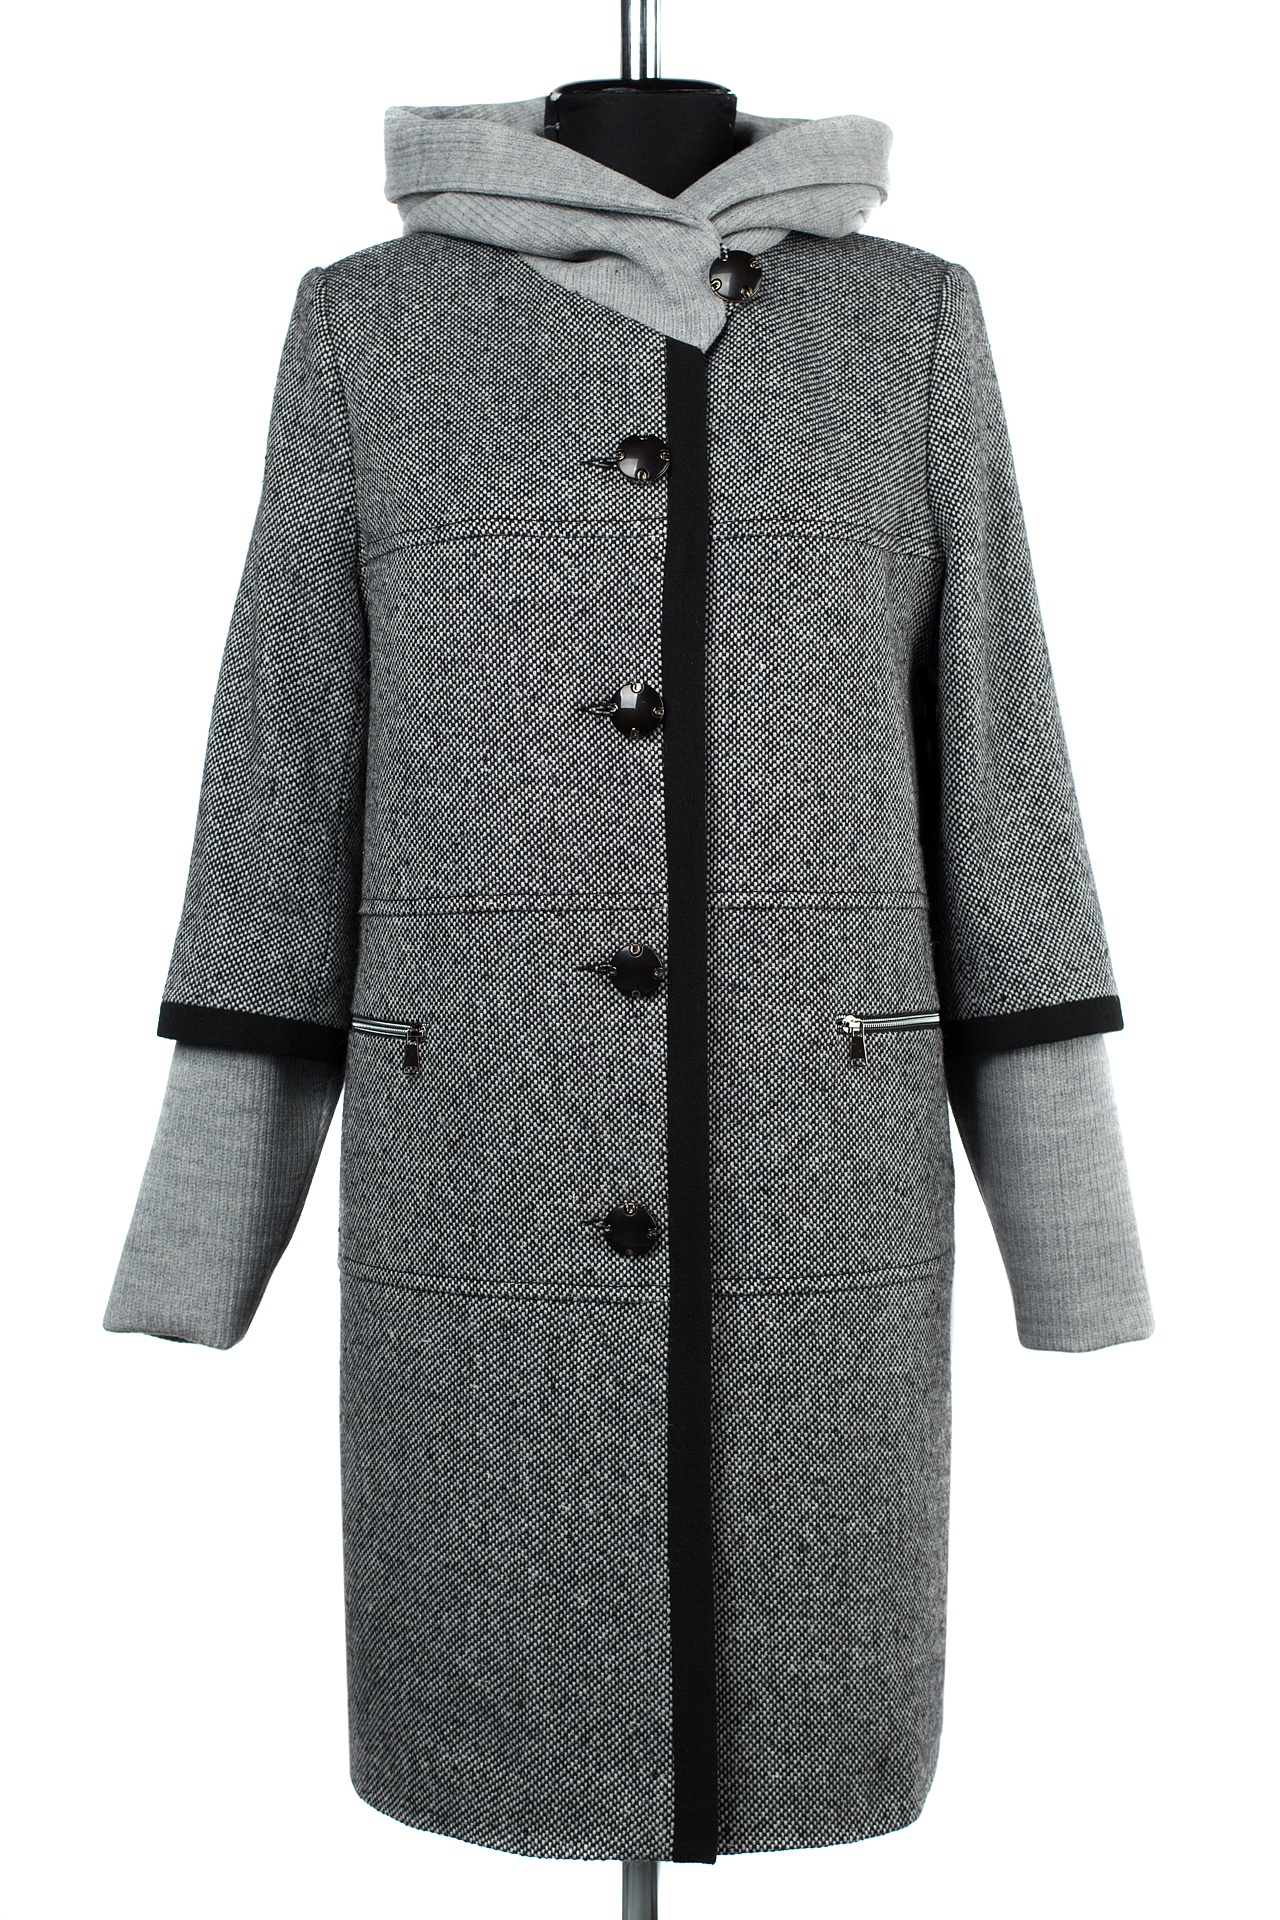 Империя пальто01—09788 пальто женское демисезонное